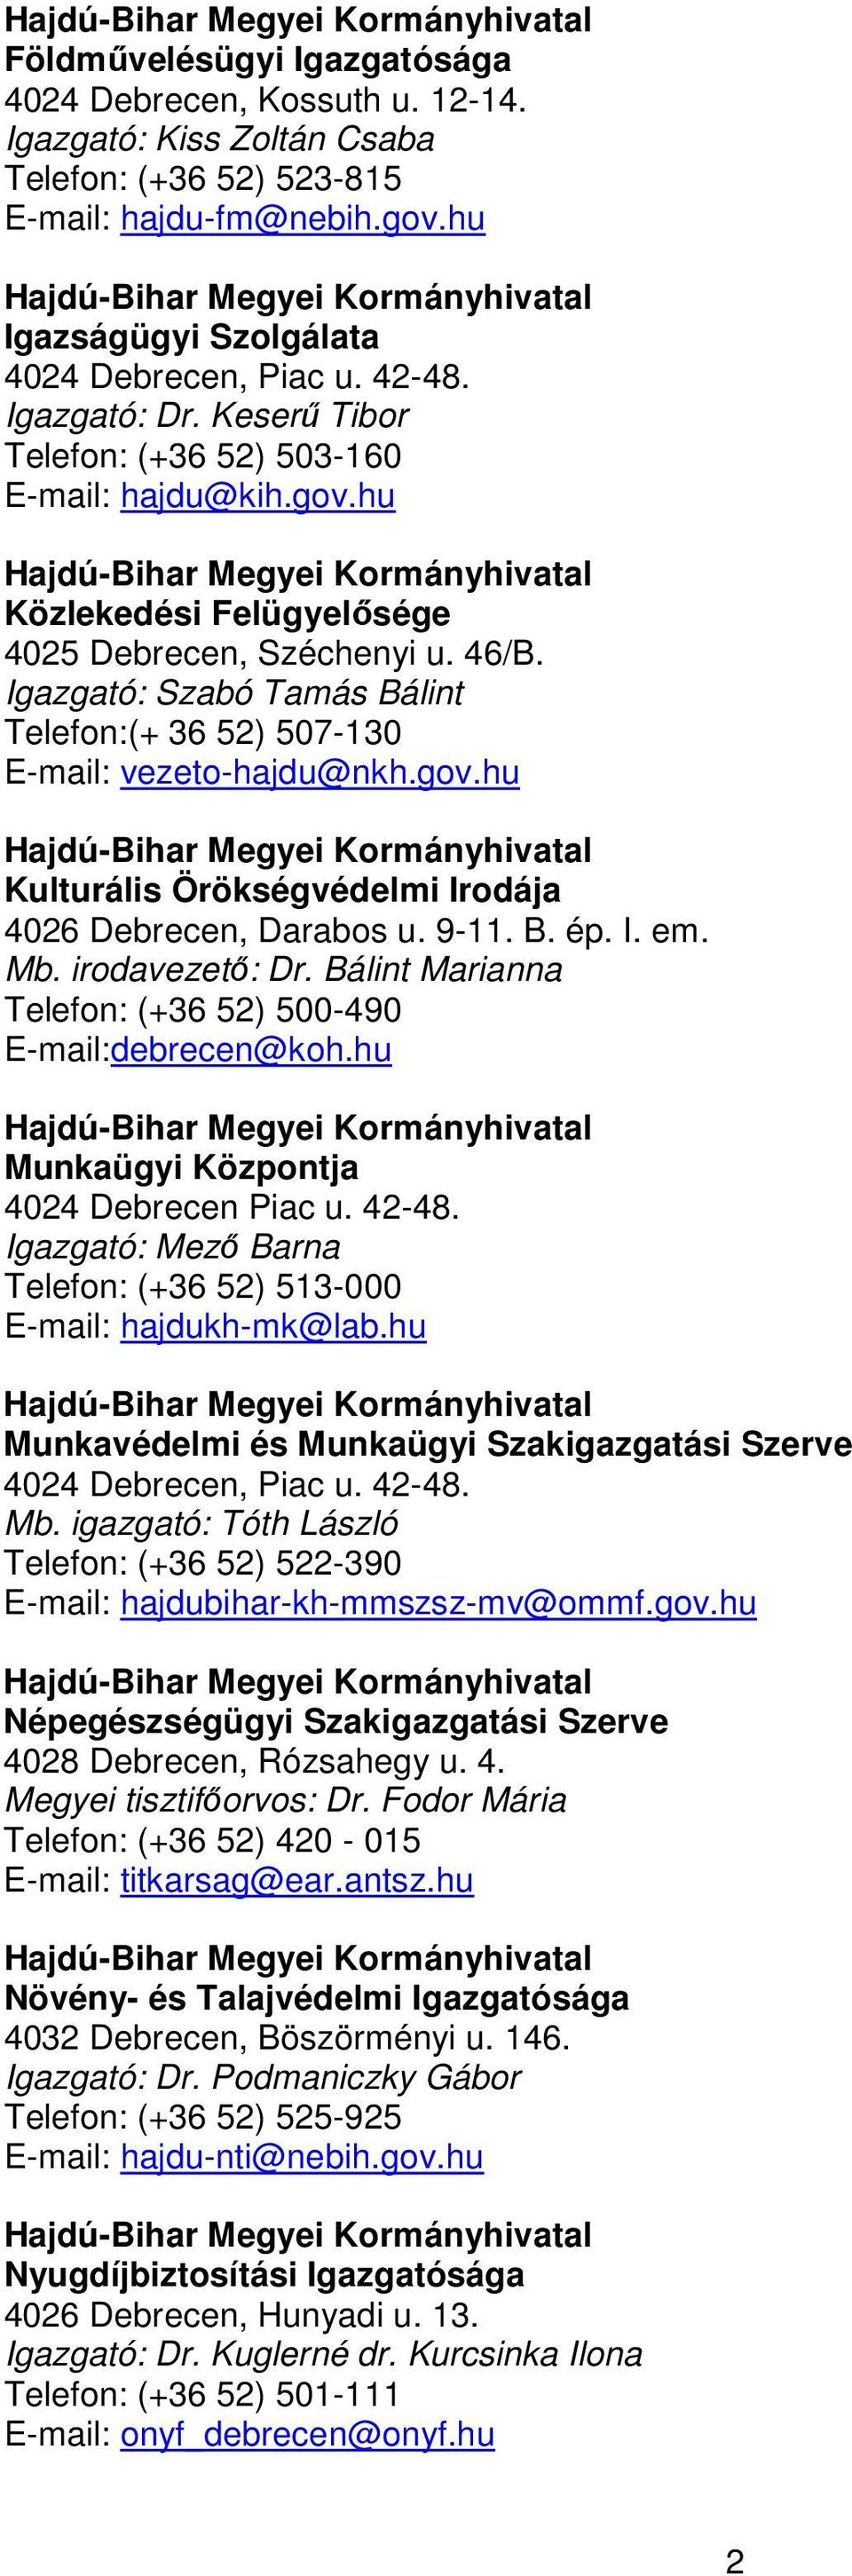 Igazgató: Szabó Tamás Bálint Telefon:(+ 36 52) 507-130 E-mail: vezeto-hajdu@nkh.gov.hu Kulturális Örökségvédelmi Irodája B. ép. I. em. Mb. irodavezető: Dr.